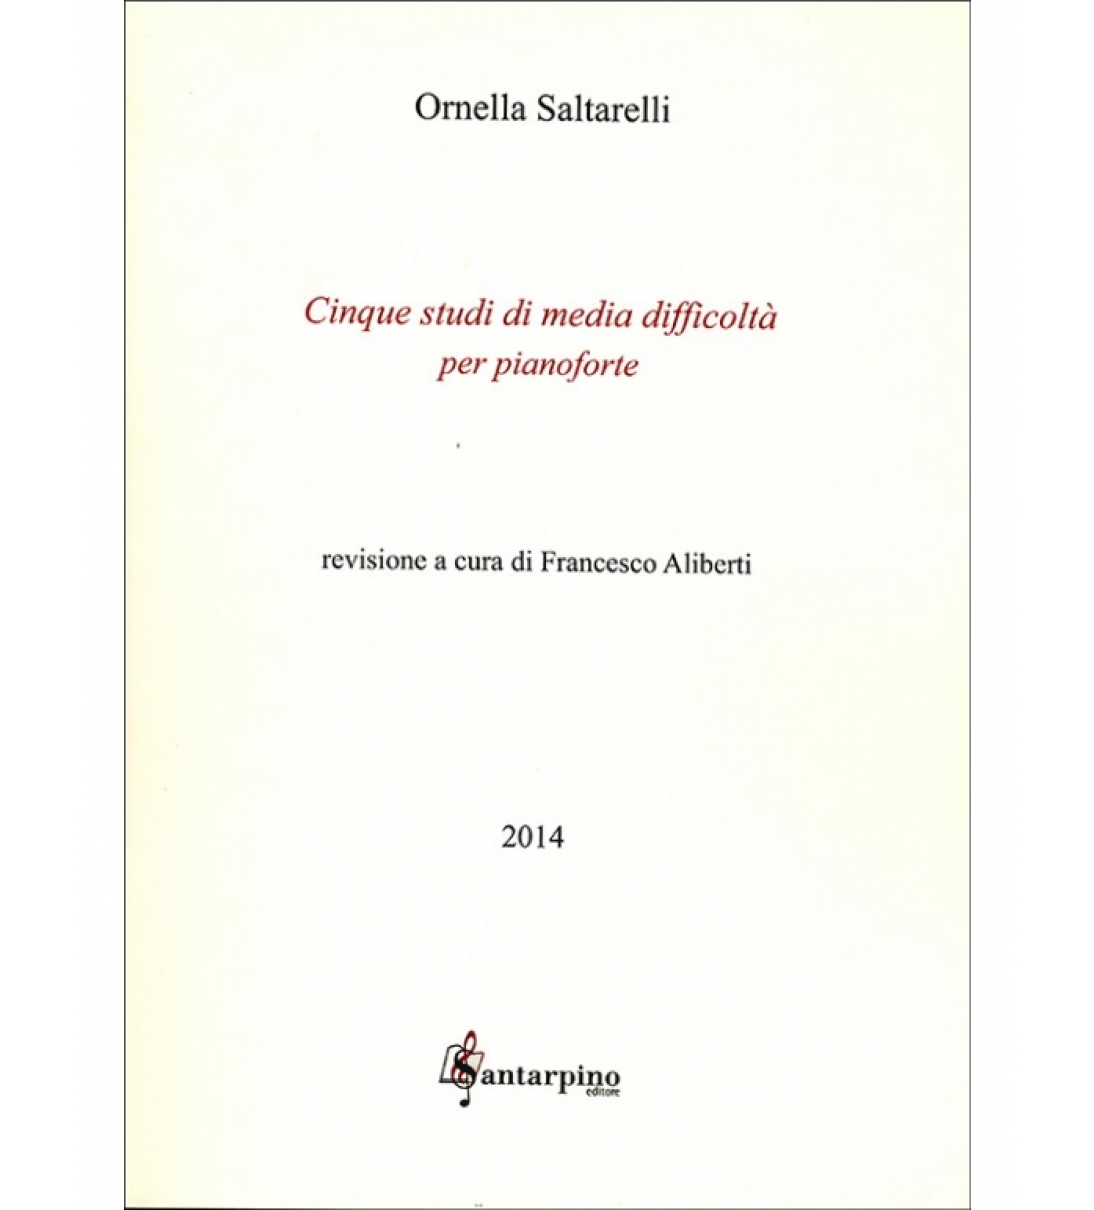 5 Studi di media difficoltà per Pianoforte - Ornella Saltarella